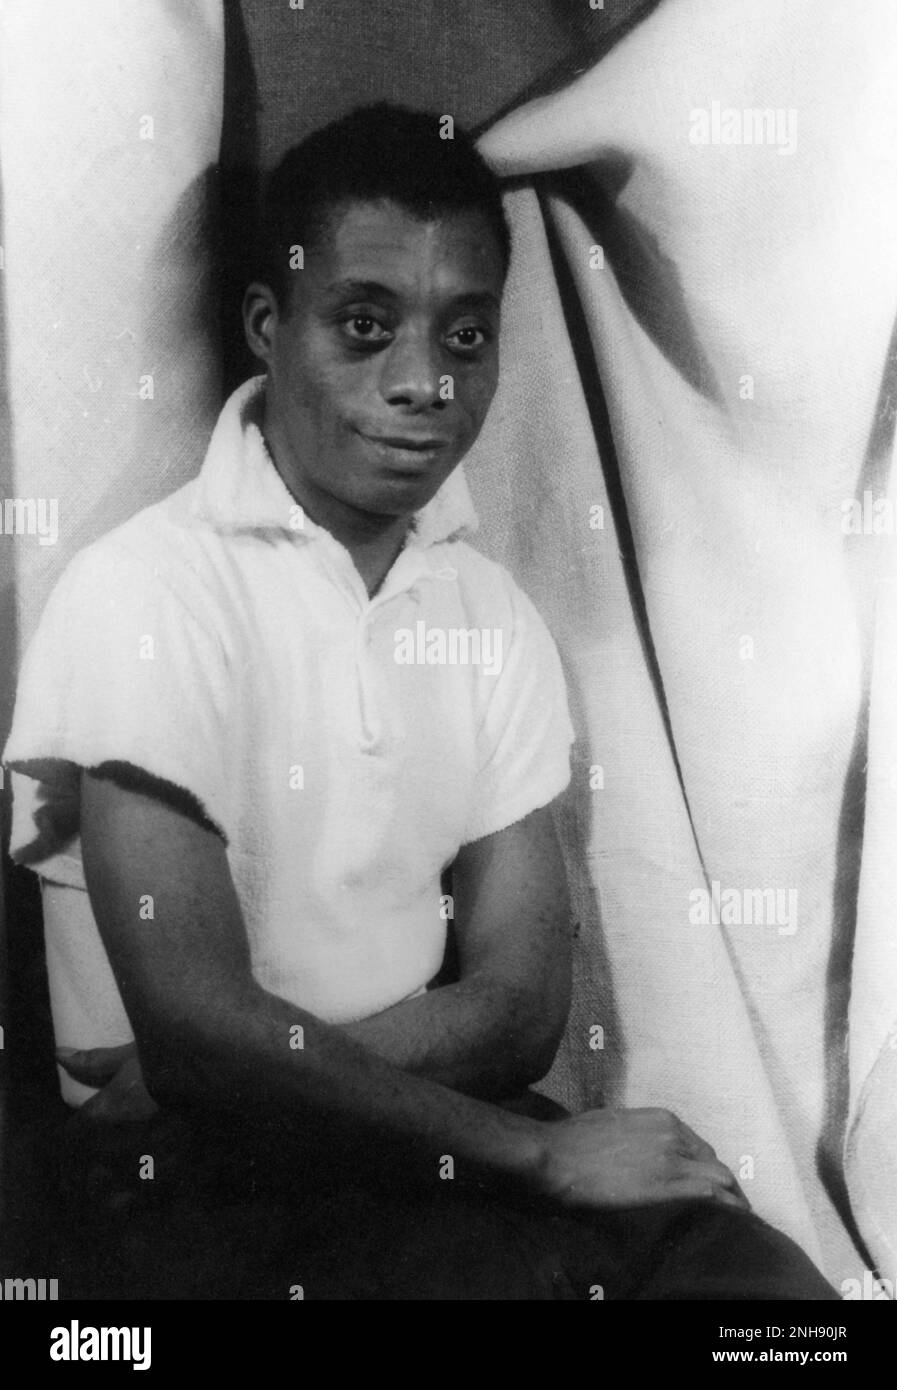 James Baldwin, écrivain et militant américain (1924-1987), photographié par Carl Van Vechten sur 13 septembre 1955. Banque D'Images